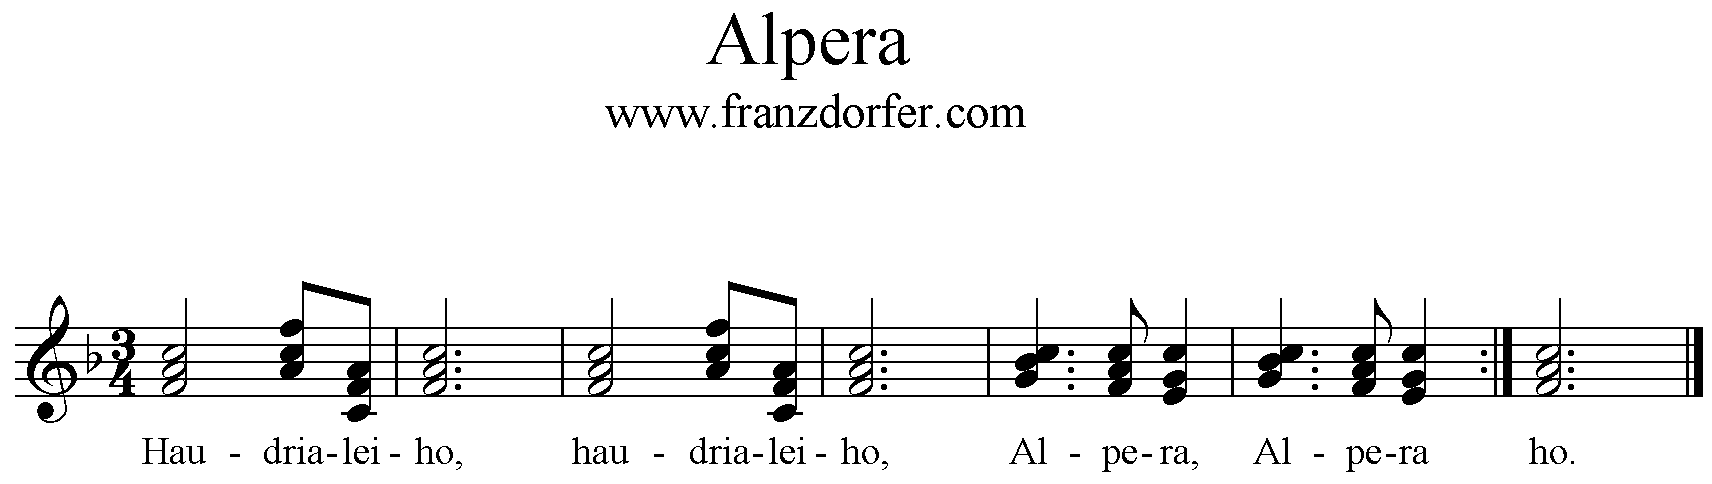 Chornoten Alpera